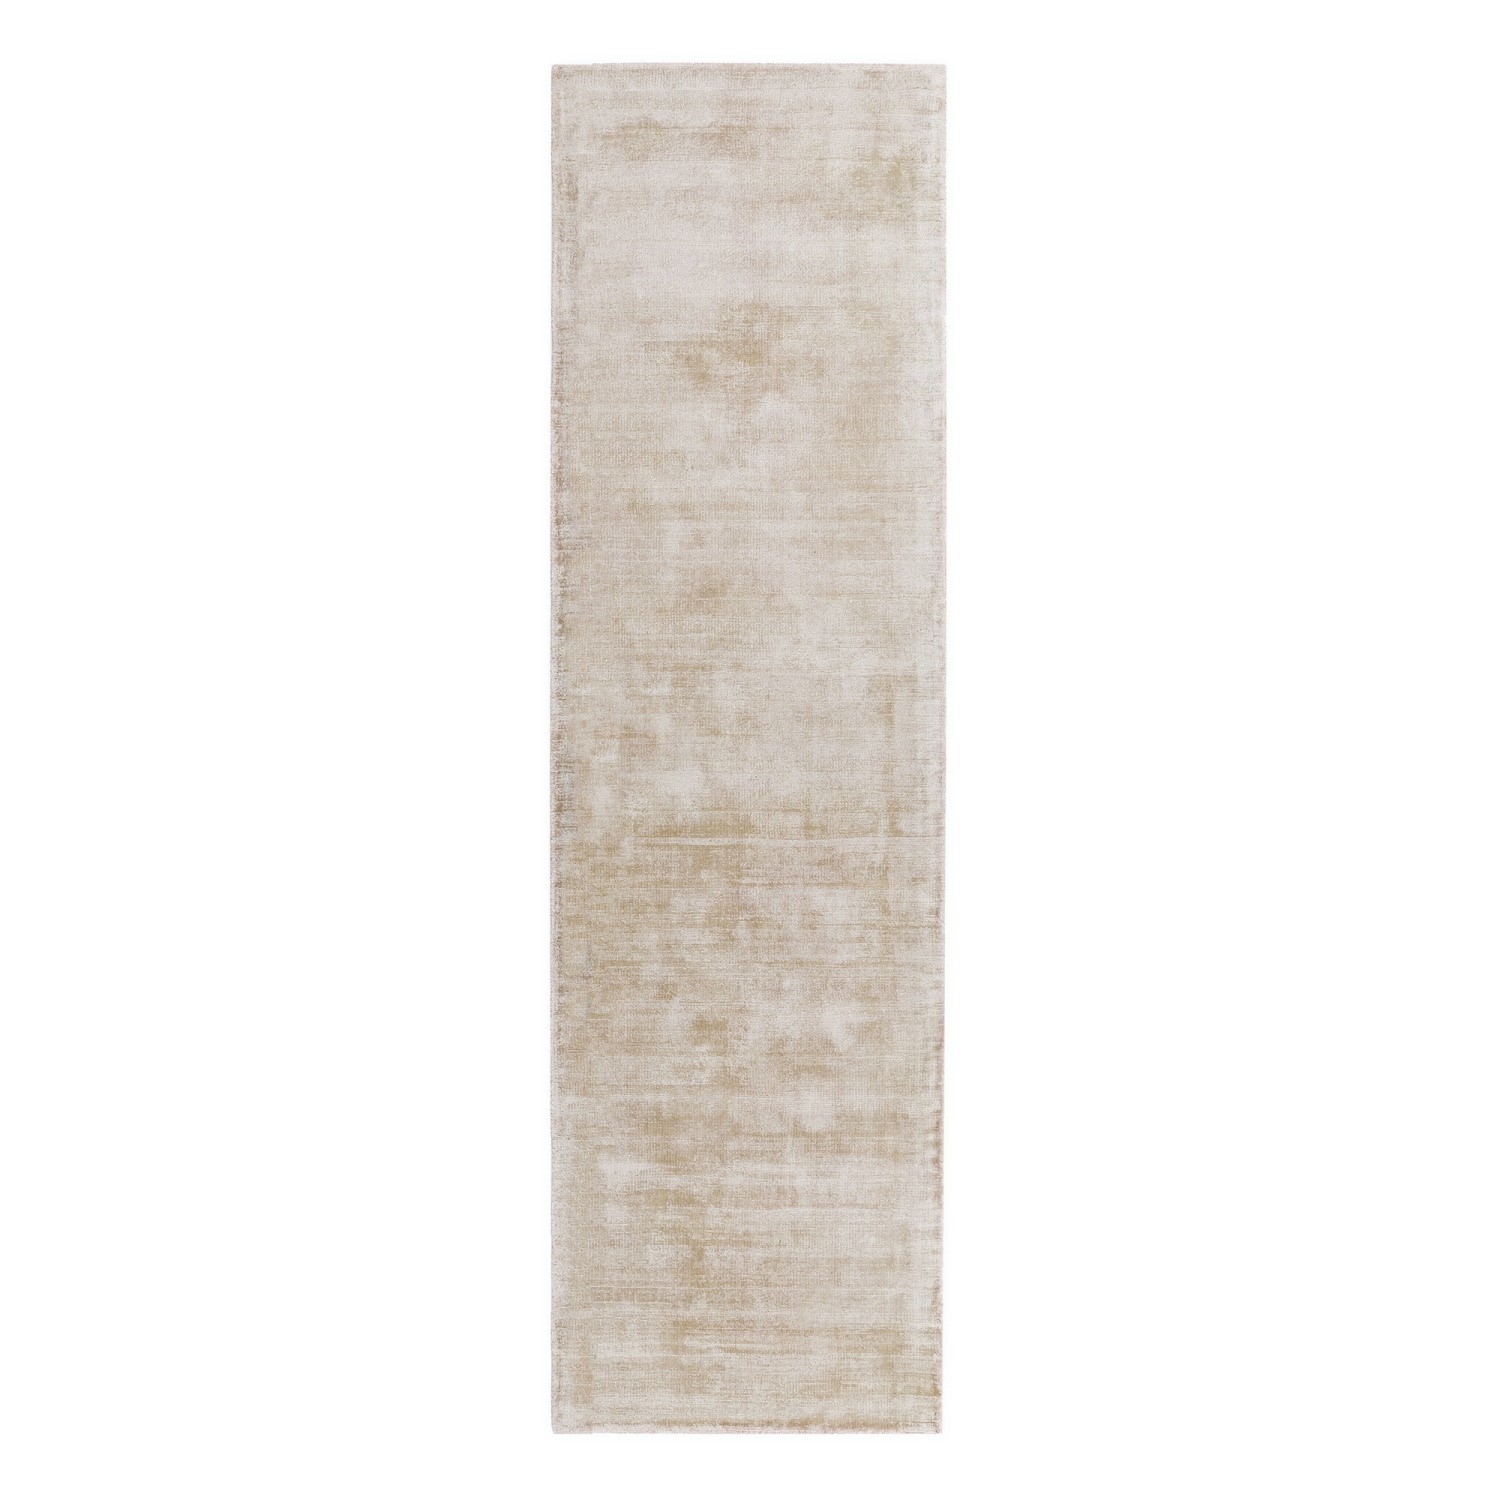 Photo of Off white runner rug - 66 x 240 cm - blade